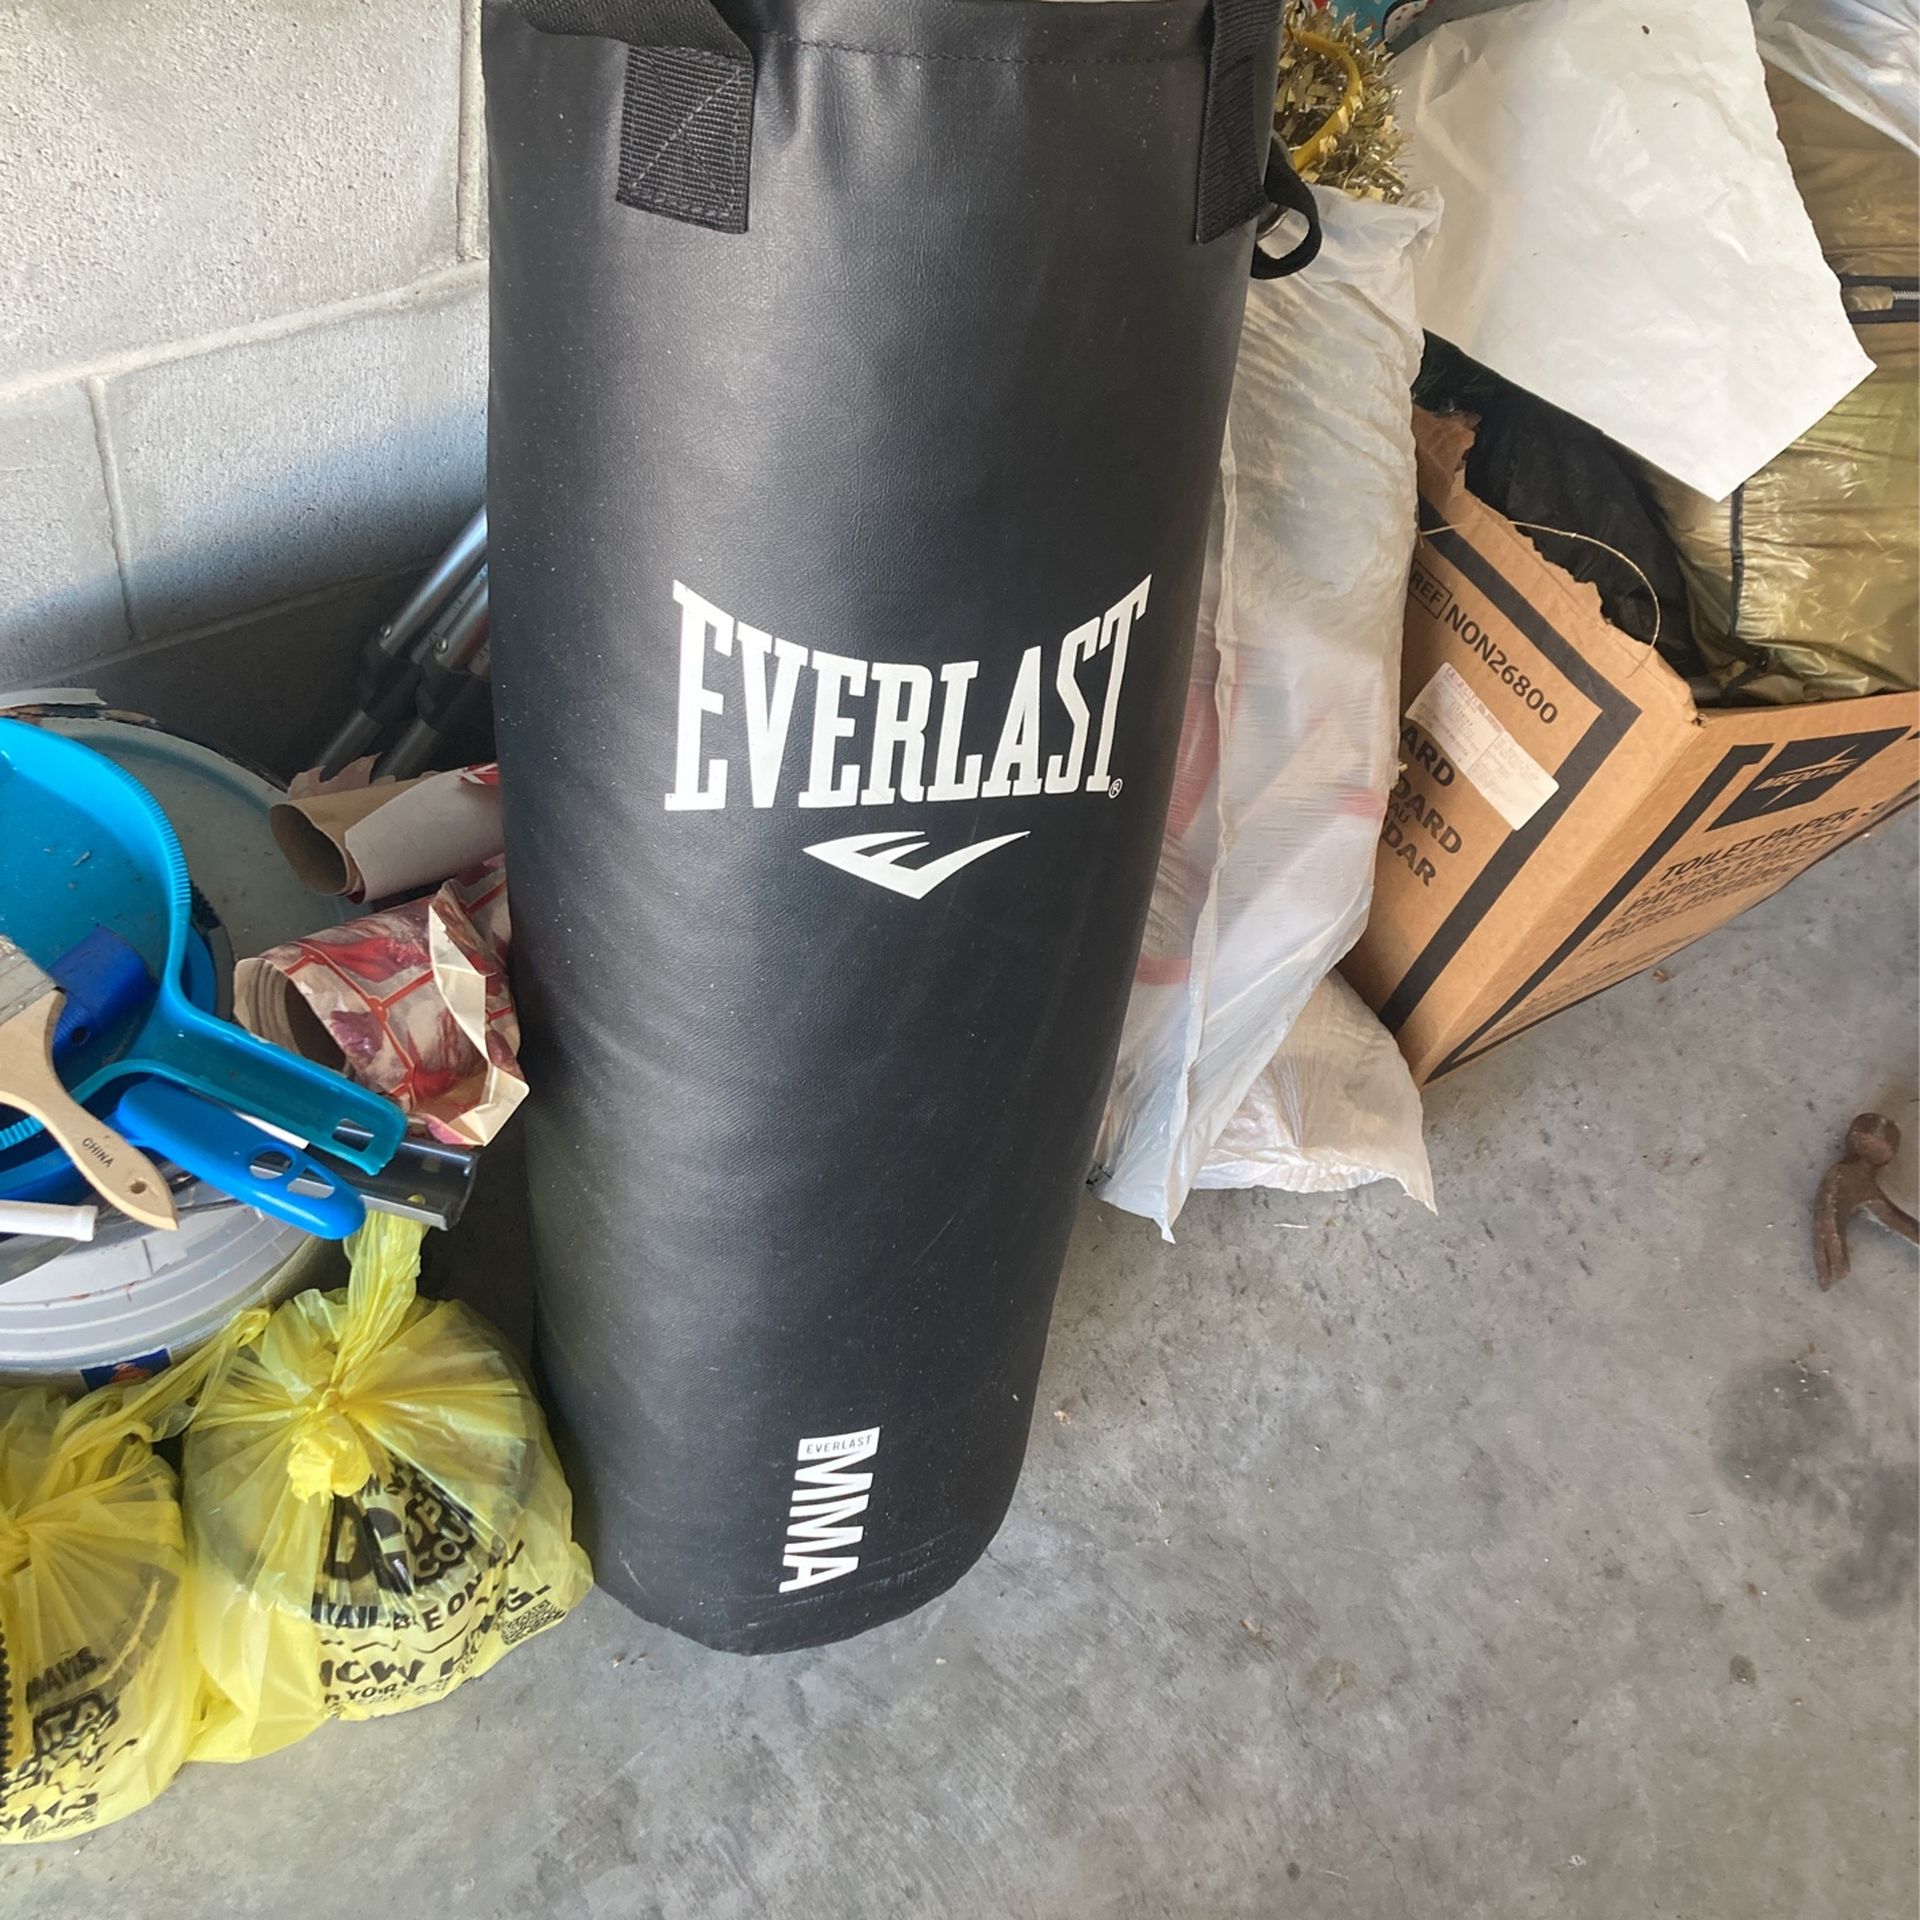 100 Pound Everlast Punching Bag